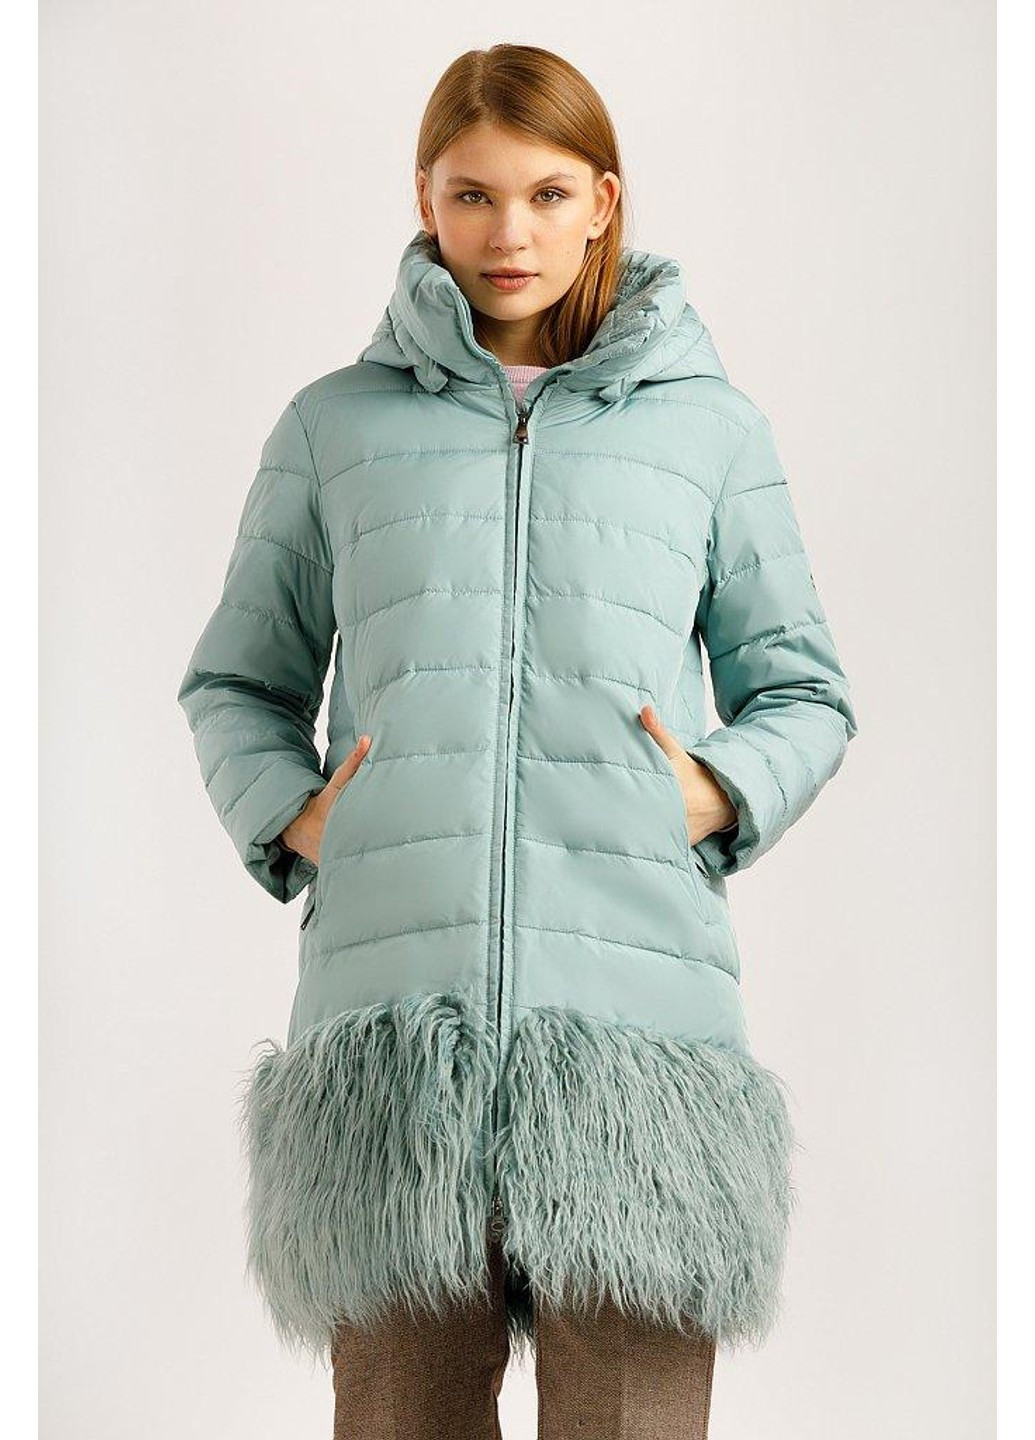 Бирюзовая зимняя зимняя куртка w19-32021-903 Finn Flare